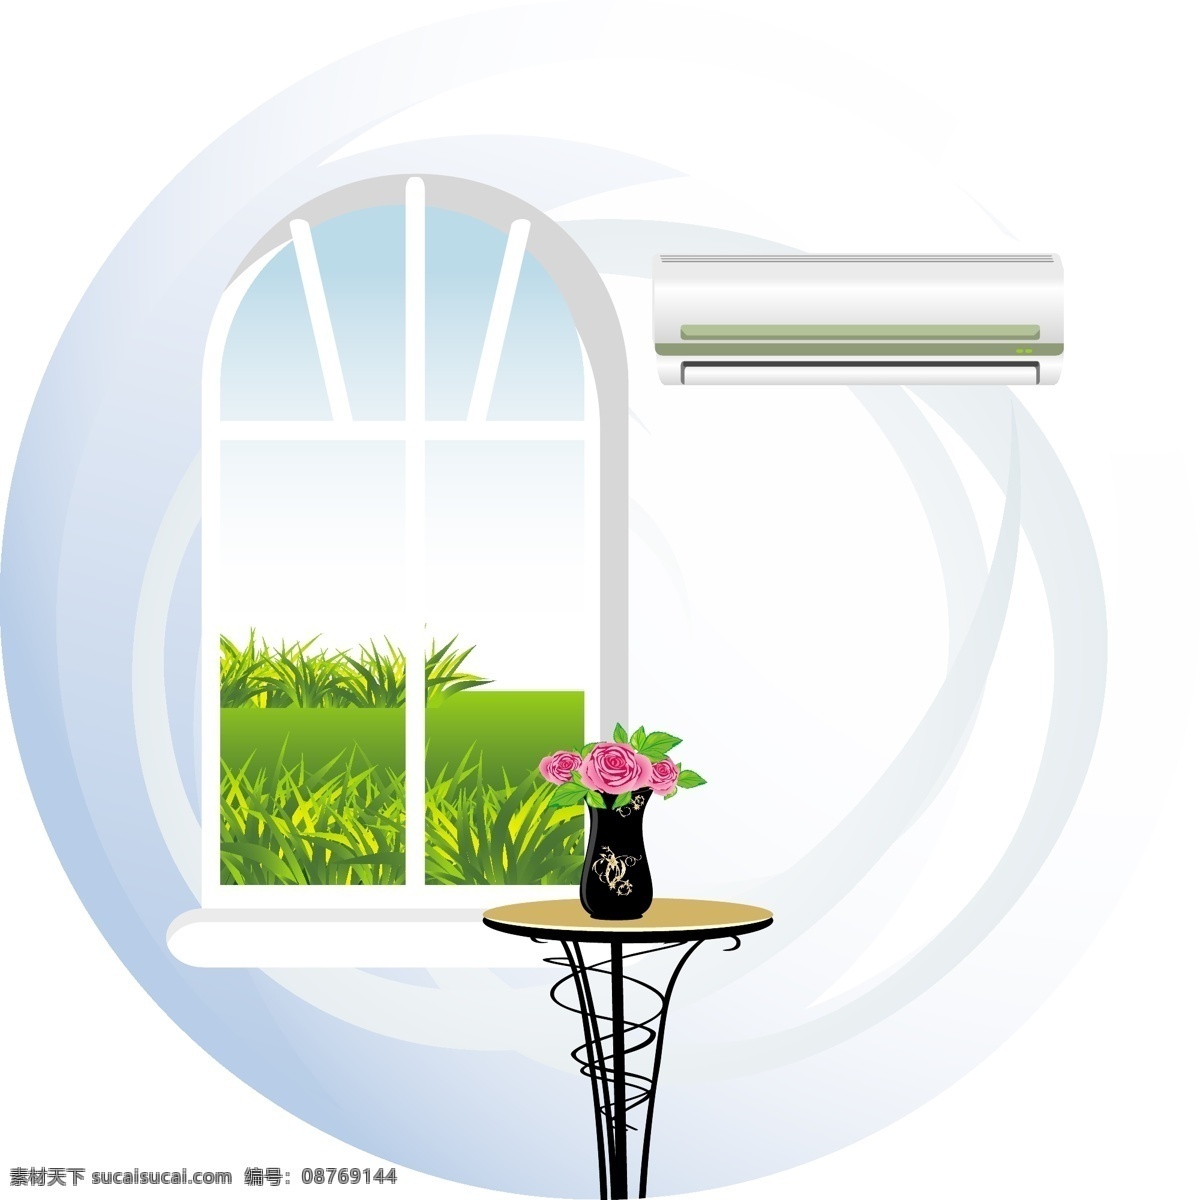 插花 窗户 窗外风景 环保 节能 空调 绿草 绿叶 节能环保 矢量 模板下载 节能环保空调 瓢虫 玫瑰 绿野 手绘 海报 环保公益海报